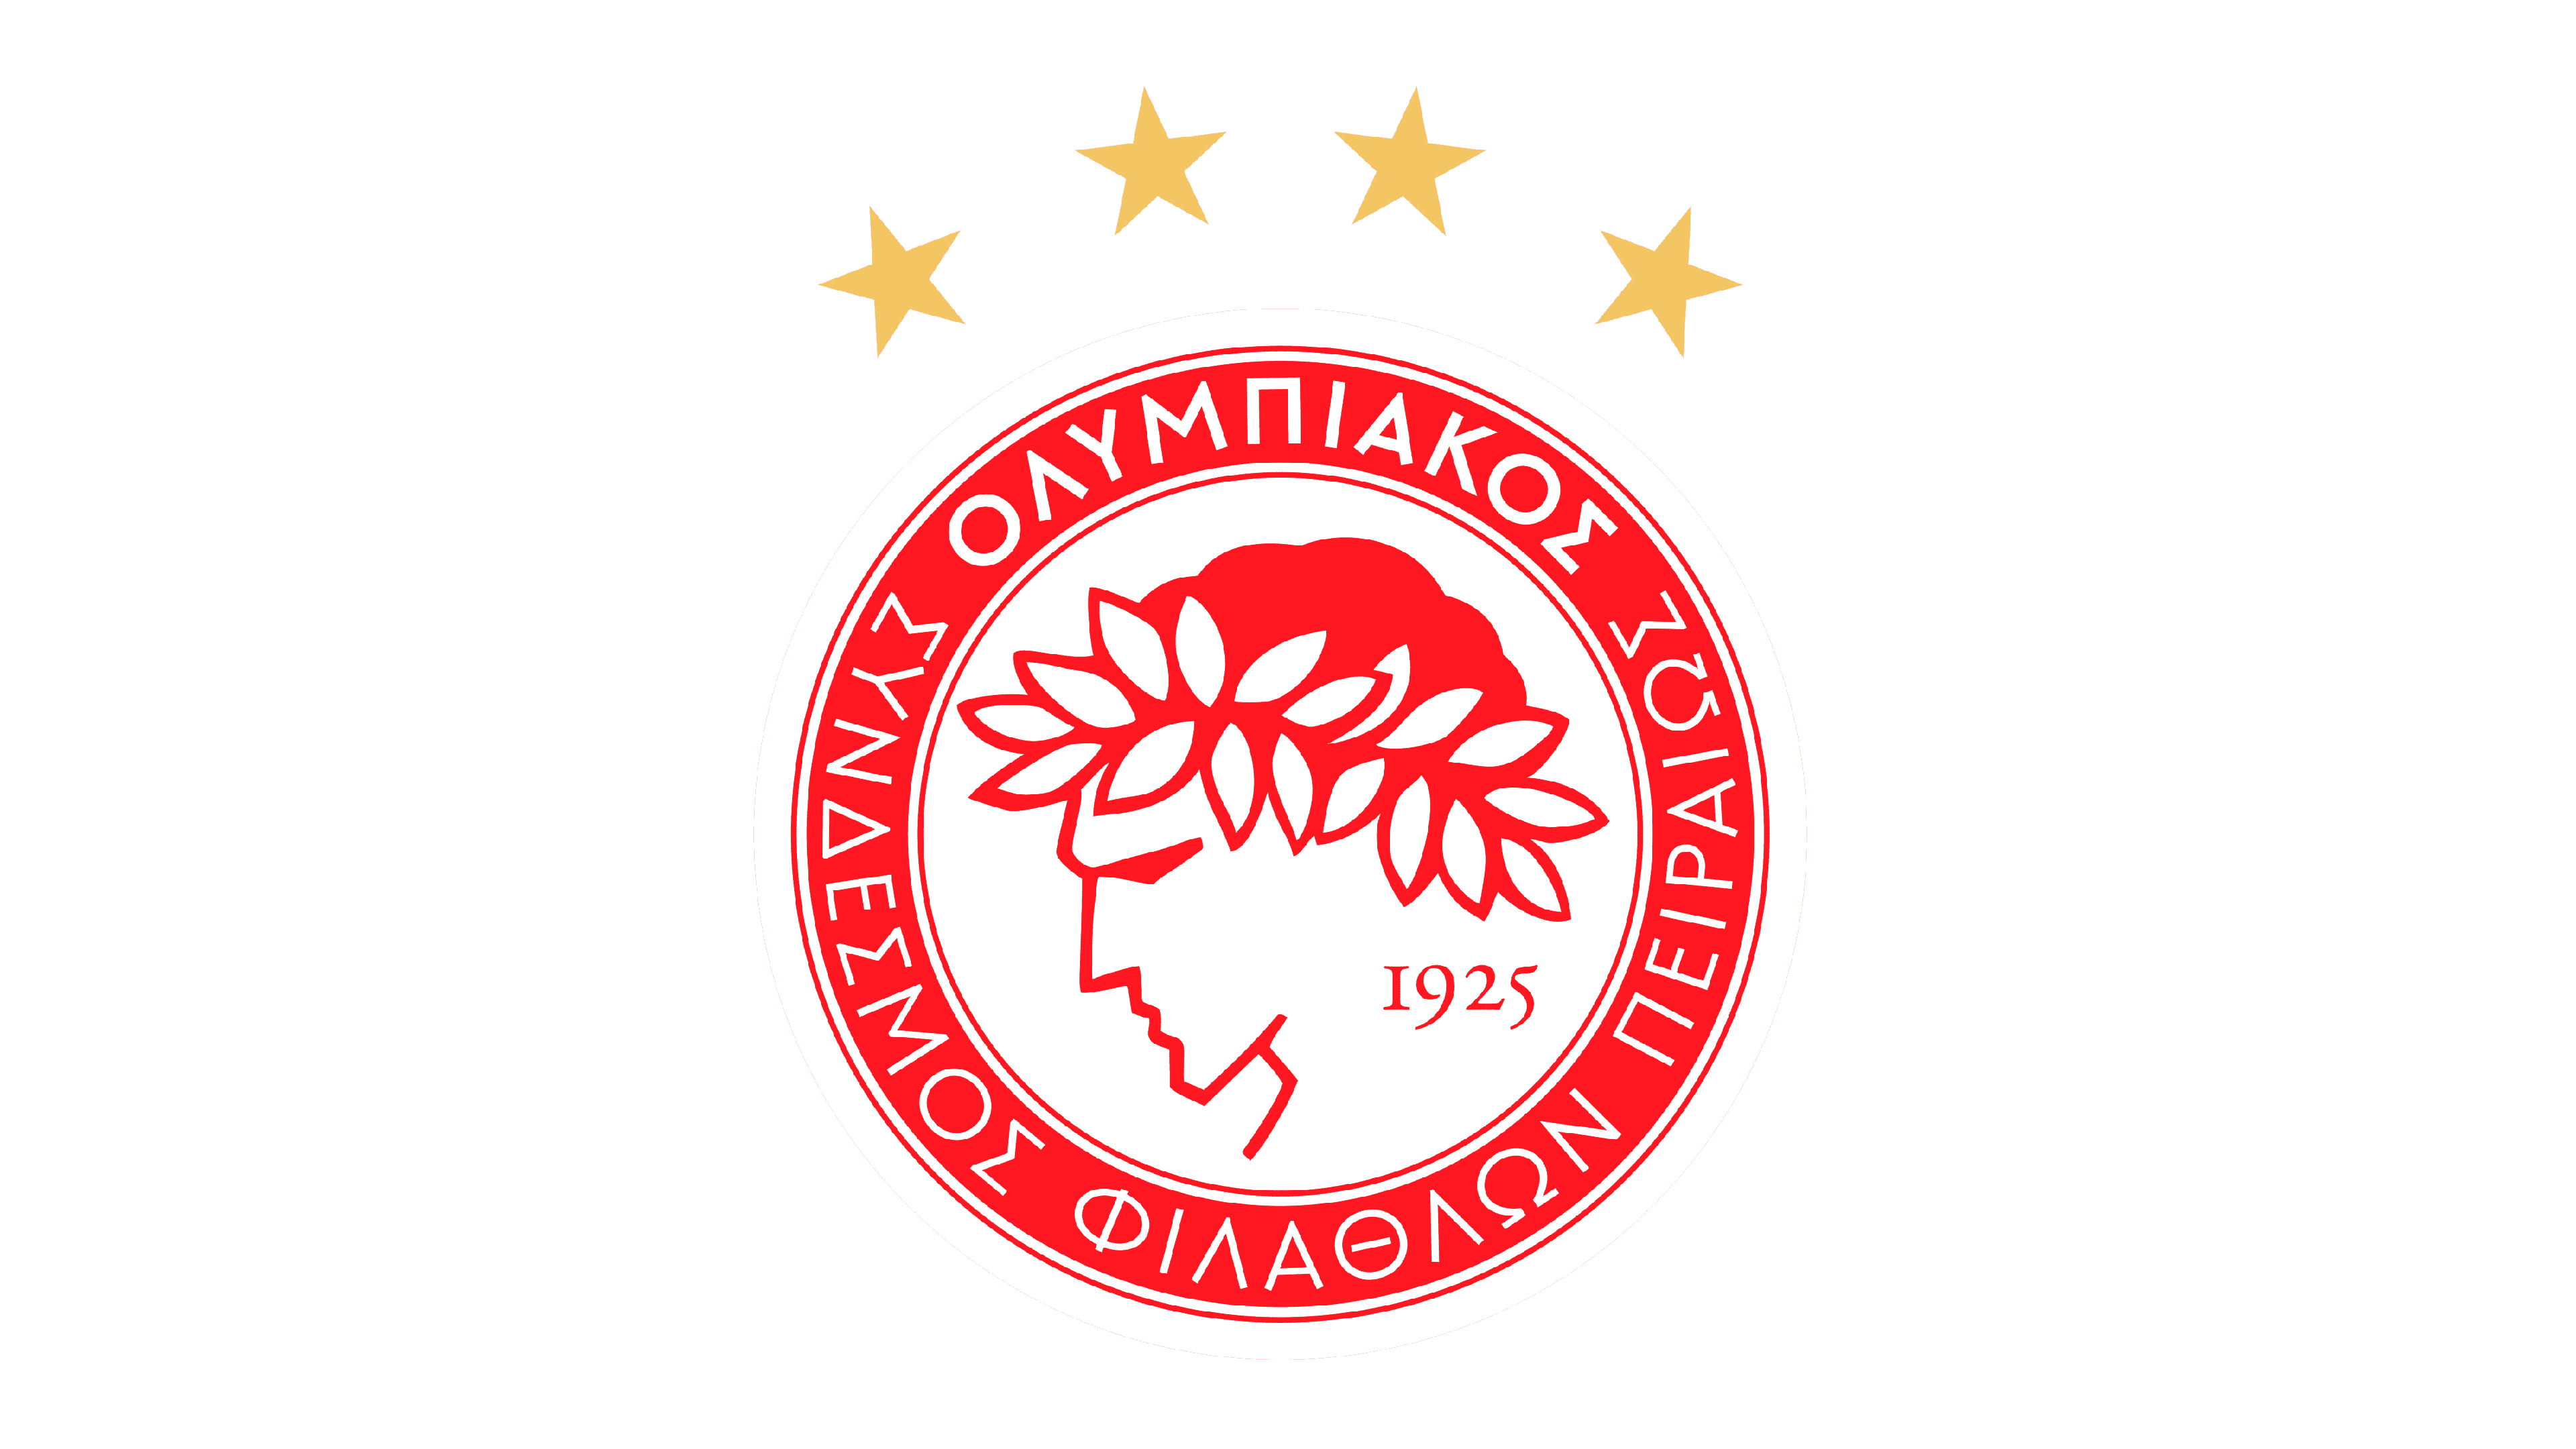 https://img2.rtve.es/aplicaciones/rtve-app-mam/imagen/evento/664e19b73cf58_Olympiacos-Logo.png